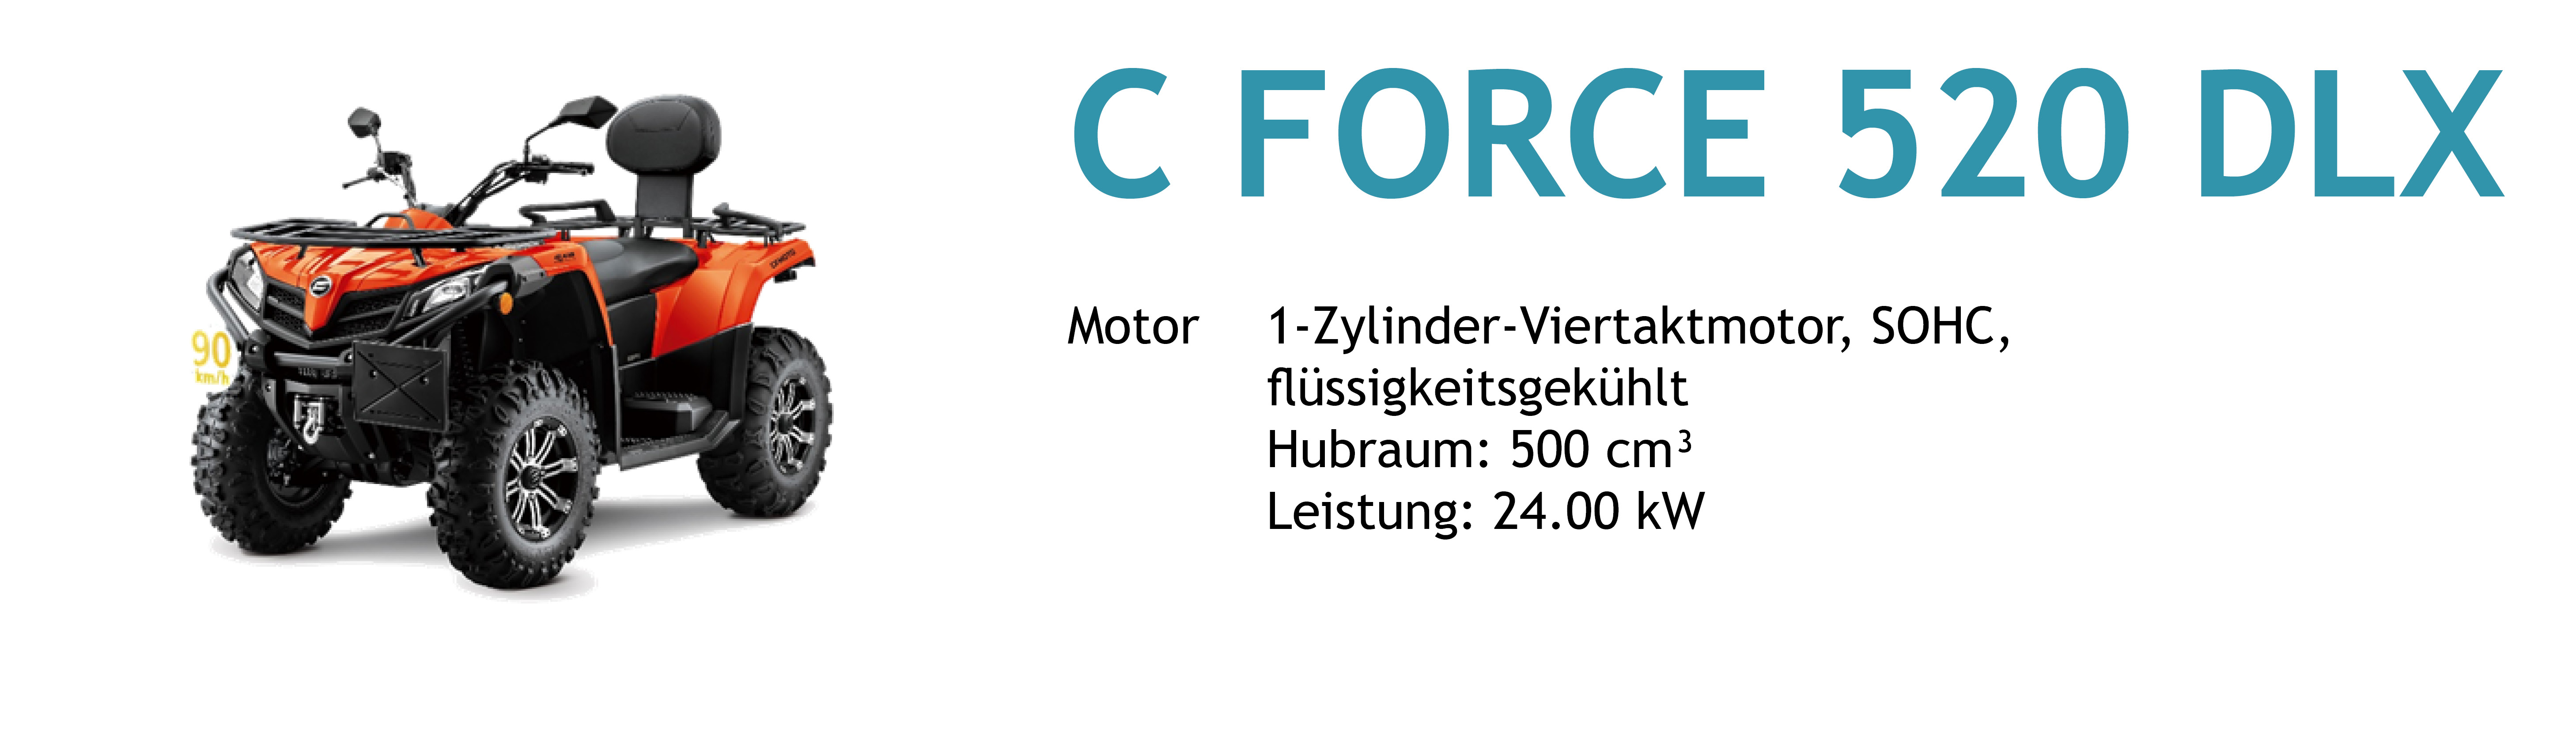 Cforce 520 DLX